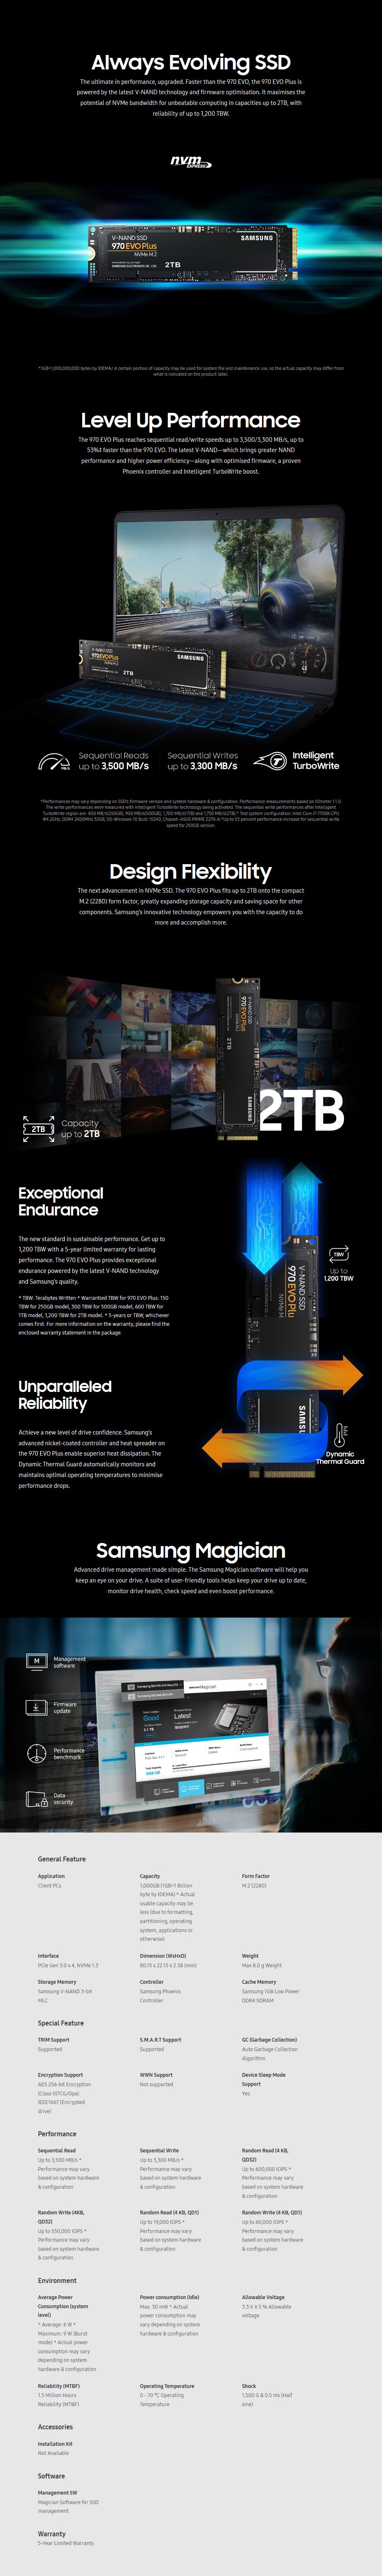 Samsung 970 EVO Plus 1TB NVMe 1.3 M.2 (2280) 3-Bit V-NAND SSD - MZ-V7S1T0BW - Desktop Overview 2